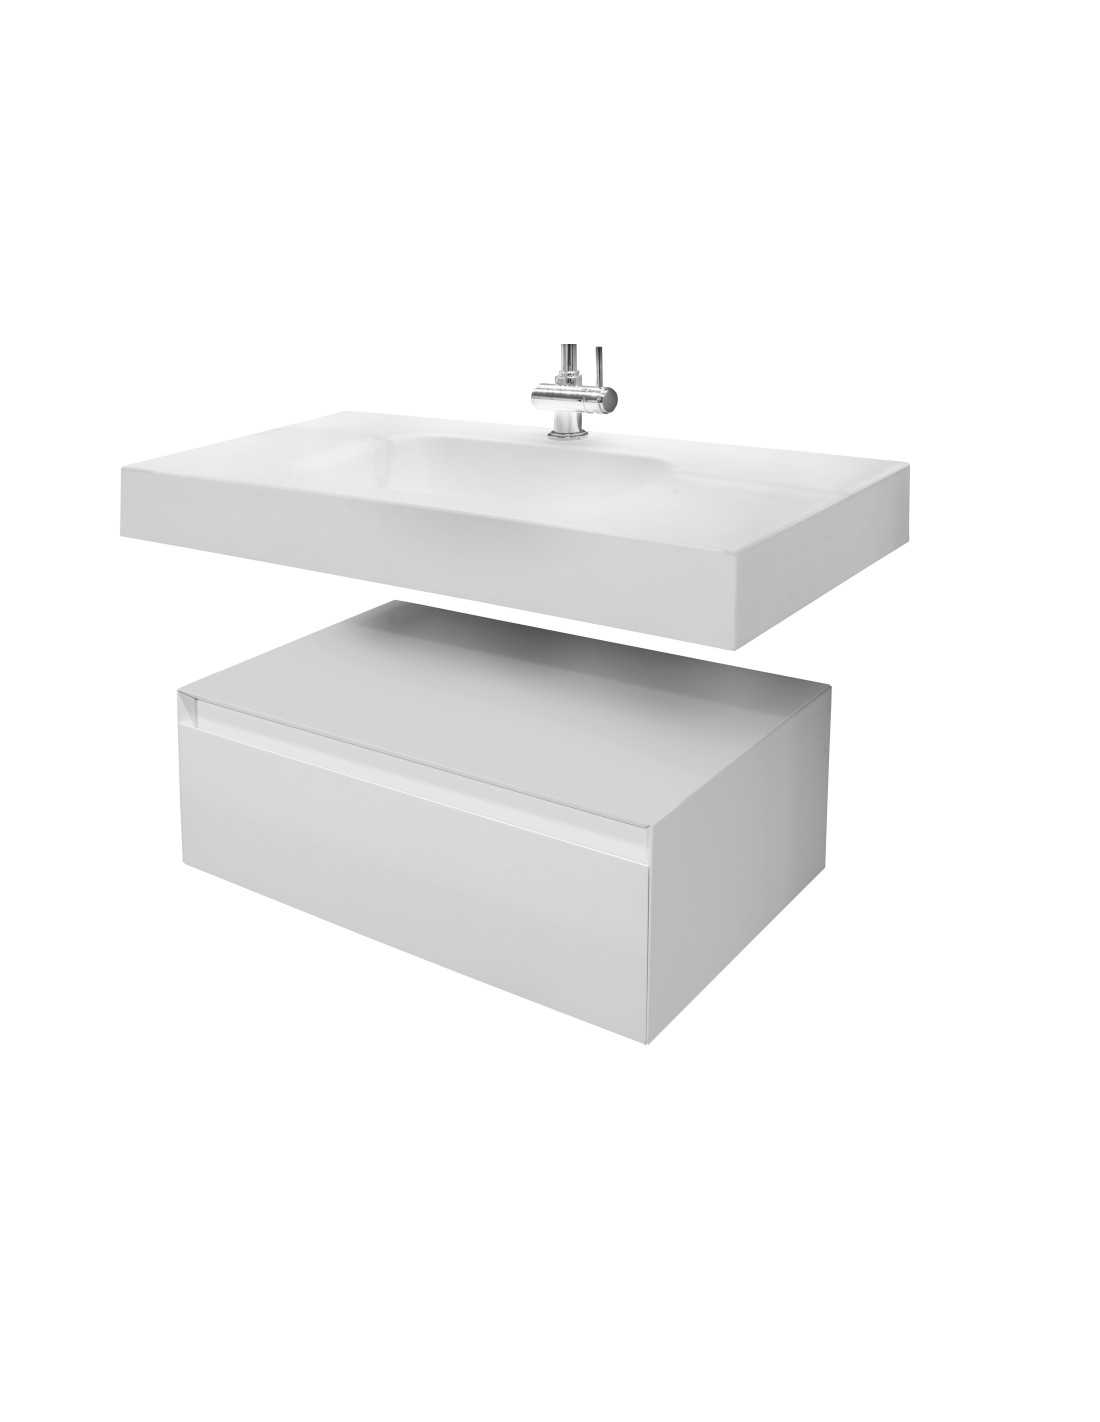 Mueble auxiliar para baño modelo KAMUI lacado color blanco mate con tapa ·  Pereda